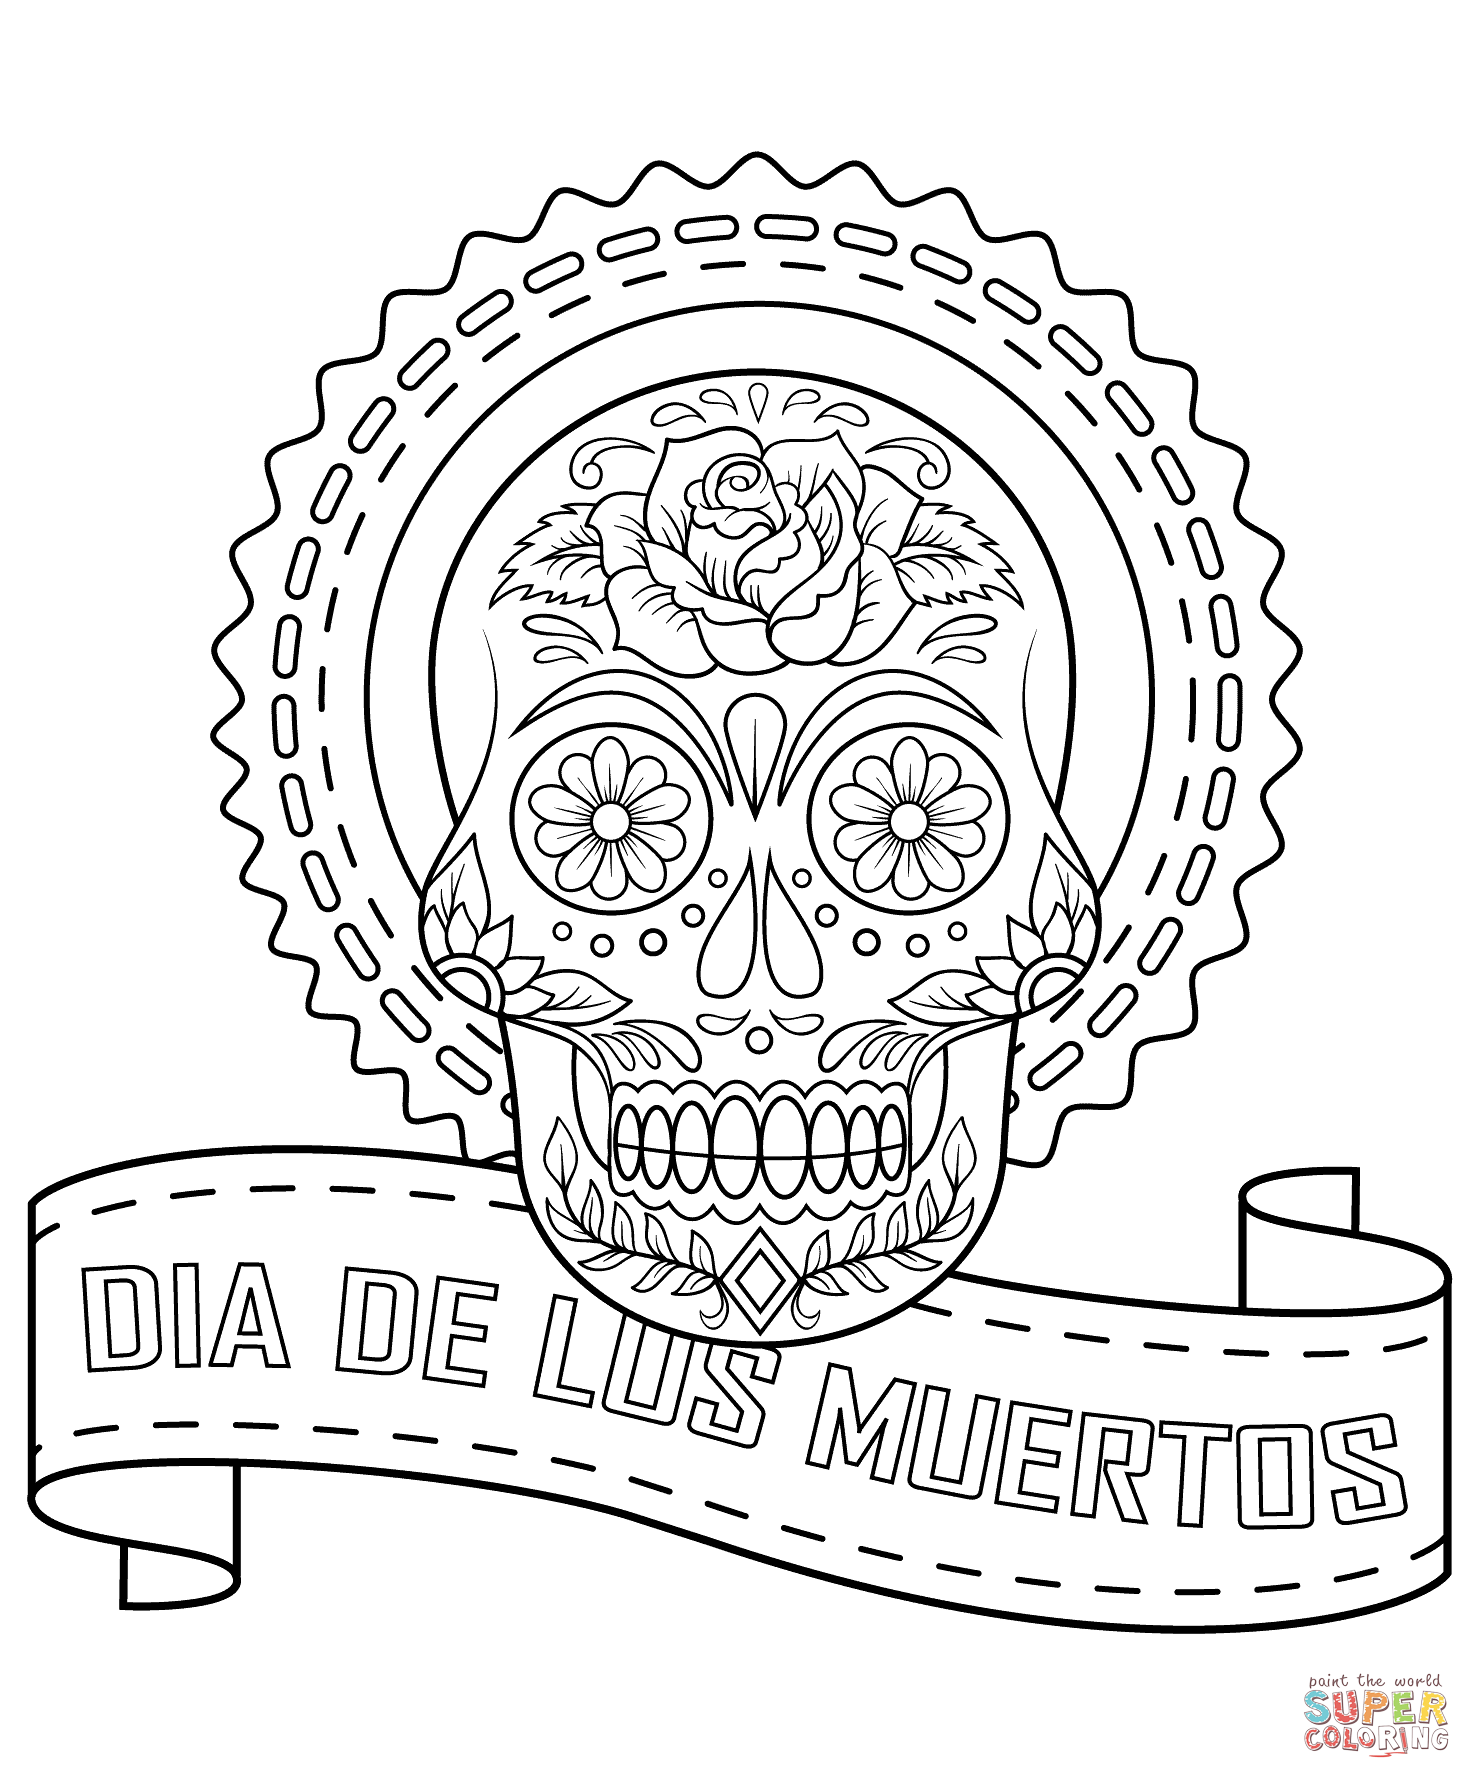 Dia de los muertos sugar skull coloring page free printable coloring pages